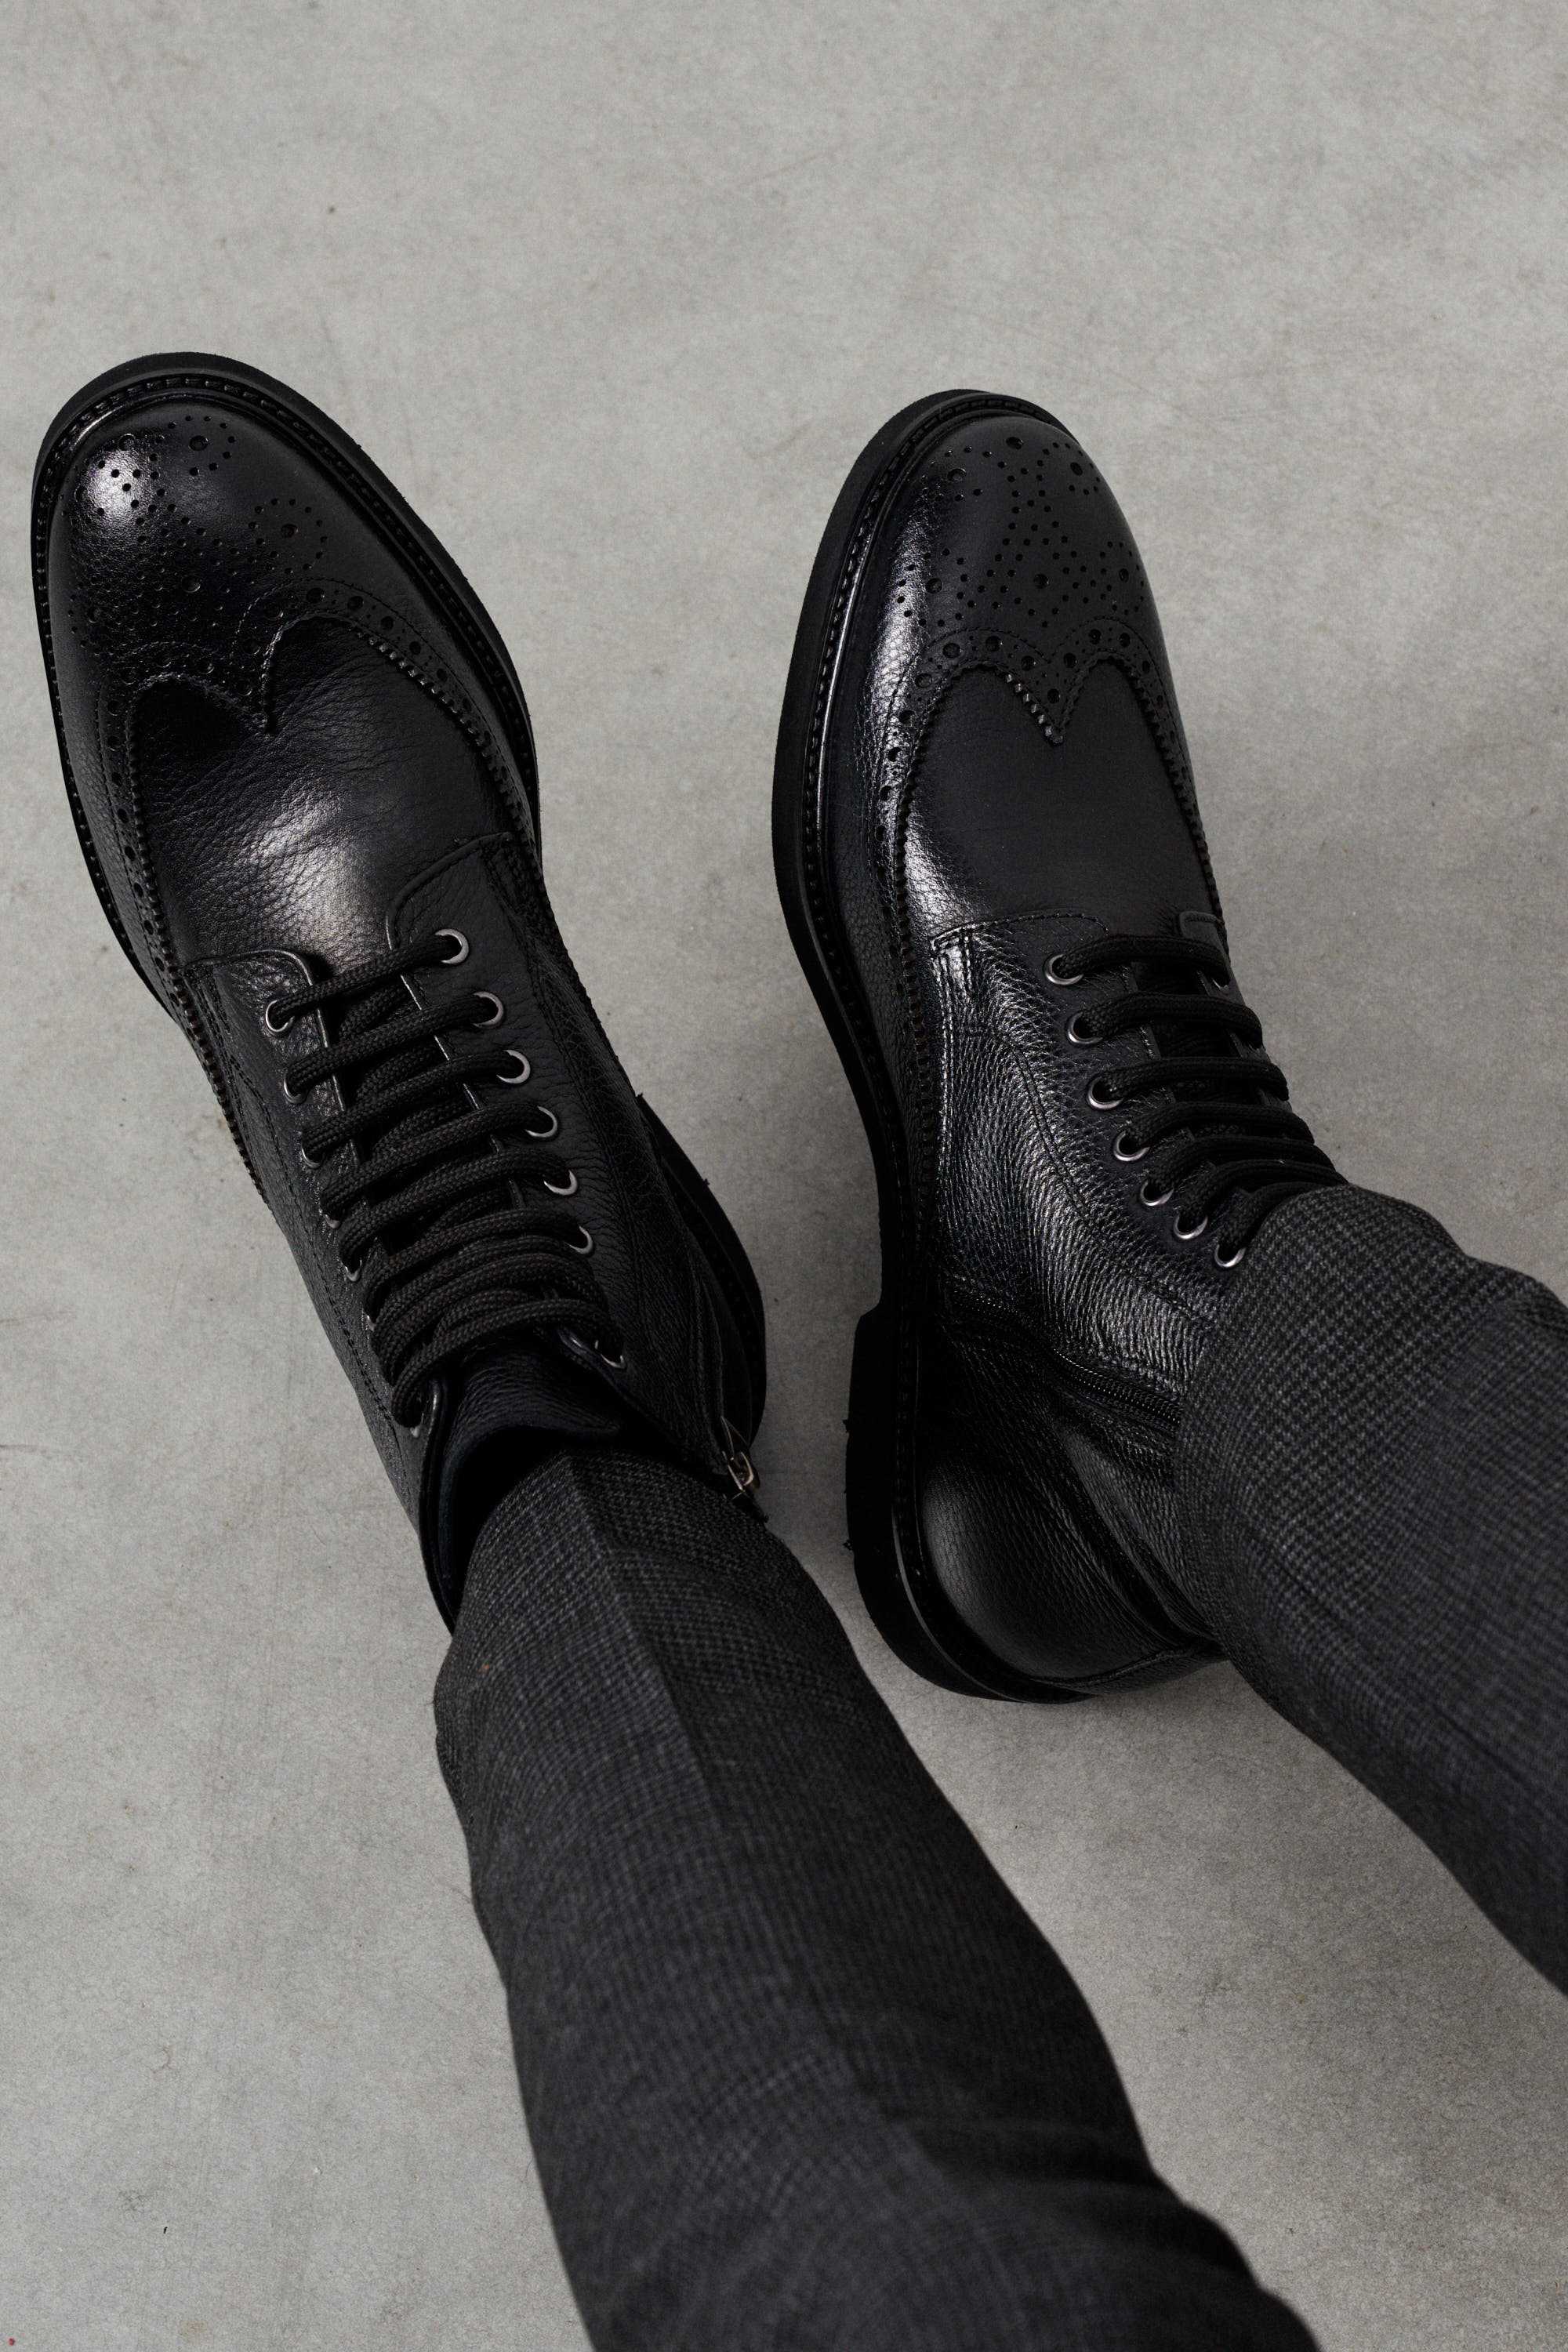 Ботинки мужские дерби броги черные на шнурках и замке, зернистая кожа -купить по выгодной цене в магазине Keyman